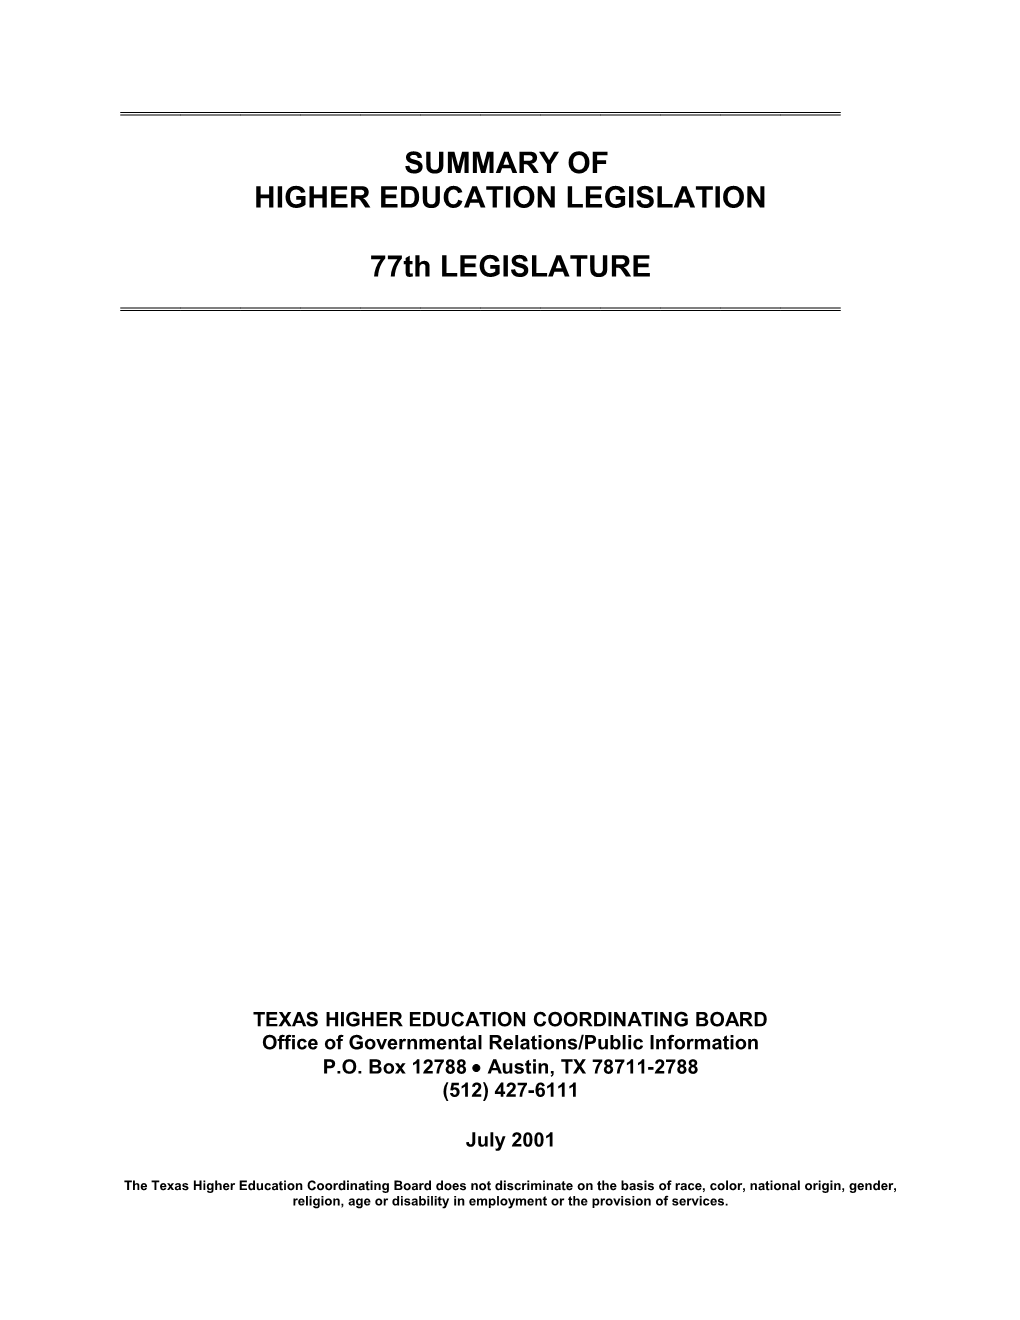 Summary of Higher Education Legislation - 77Th Legislature